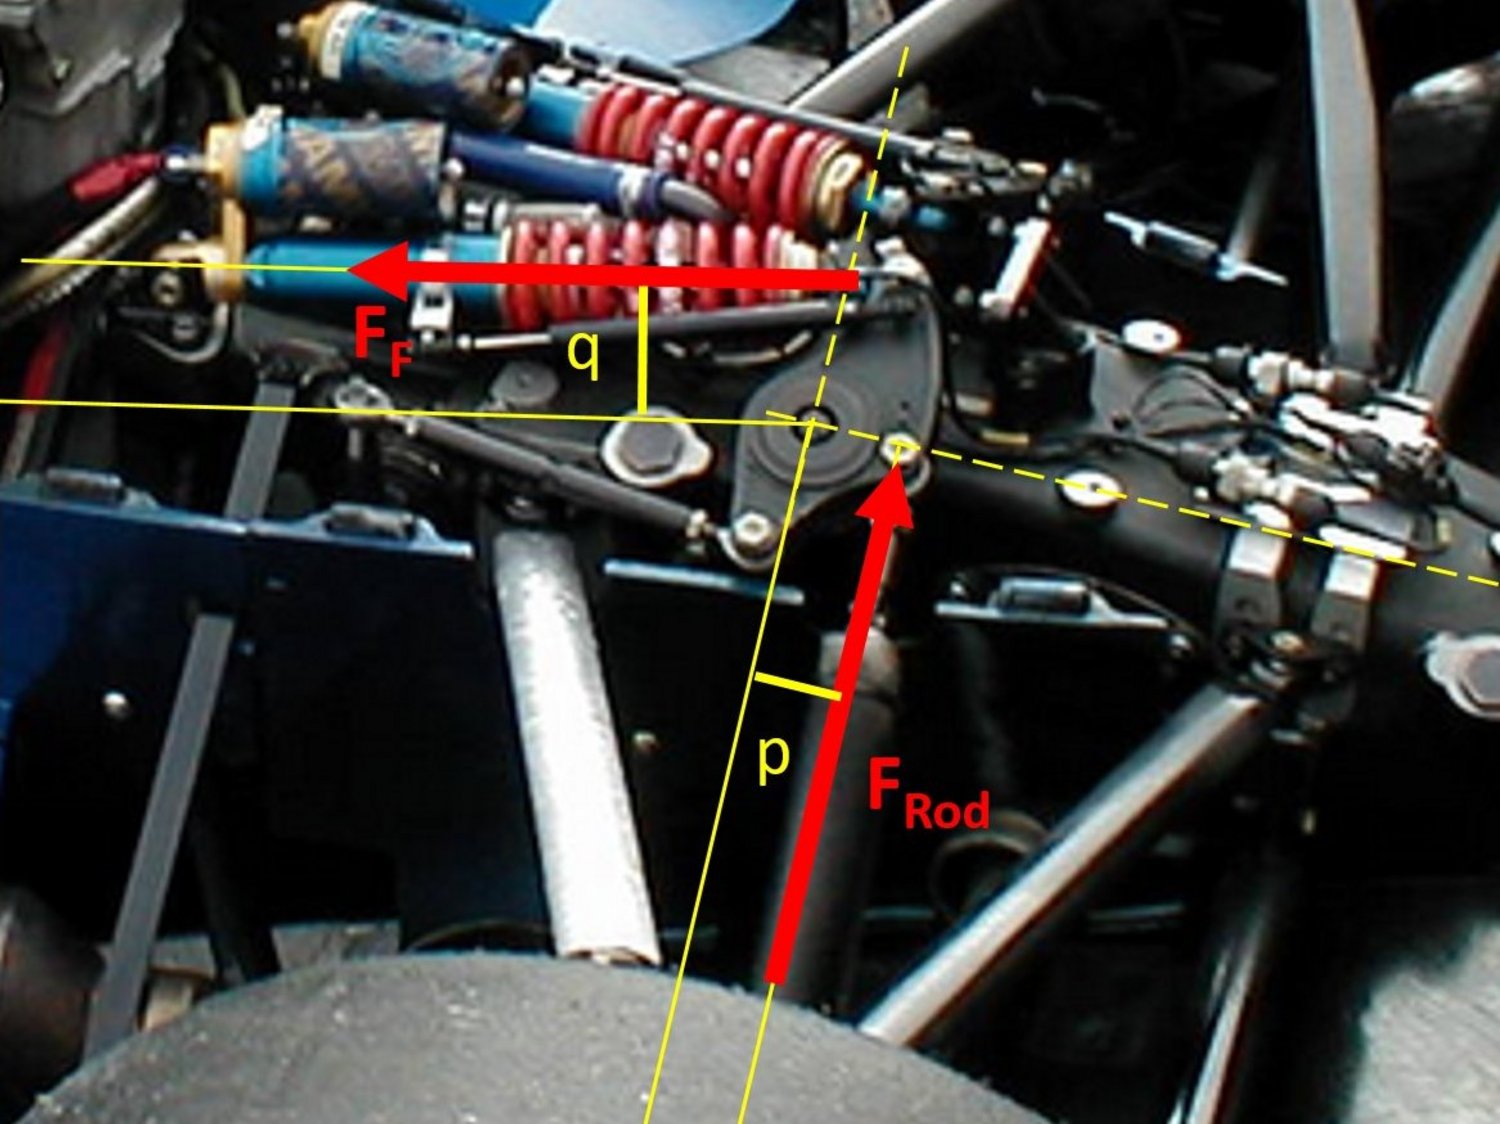 Detailansicht der Achsaufhängung eines Rennwagens mit eingeblendeten Winkeldaten